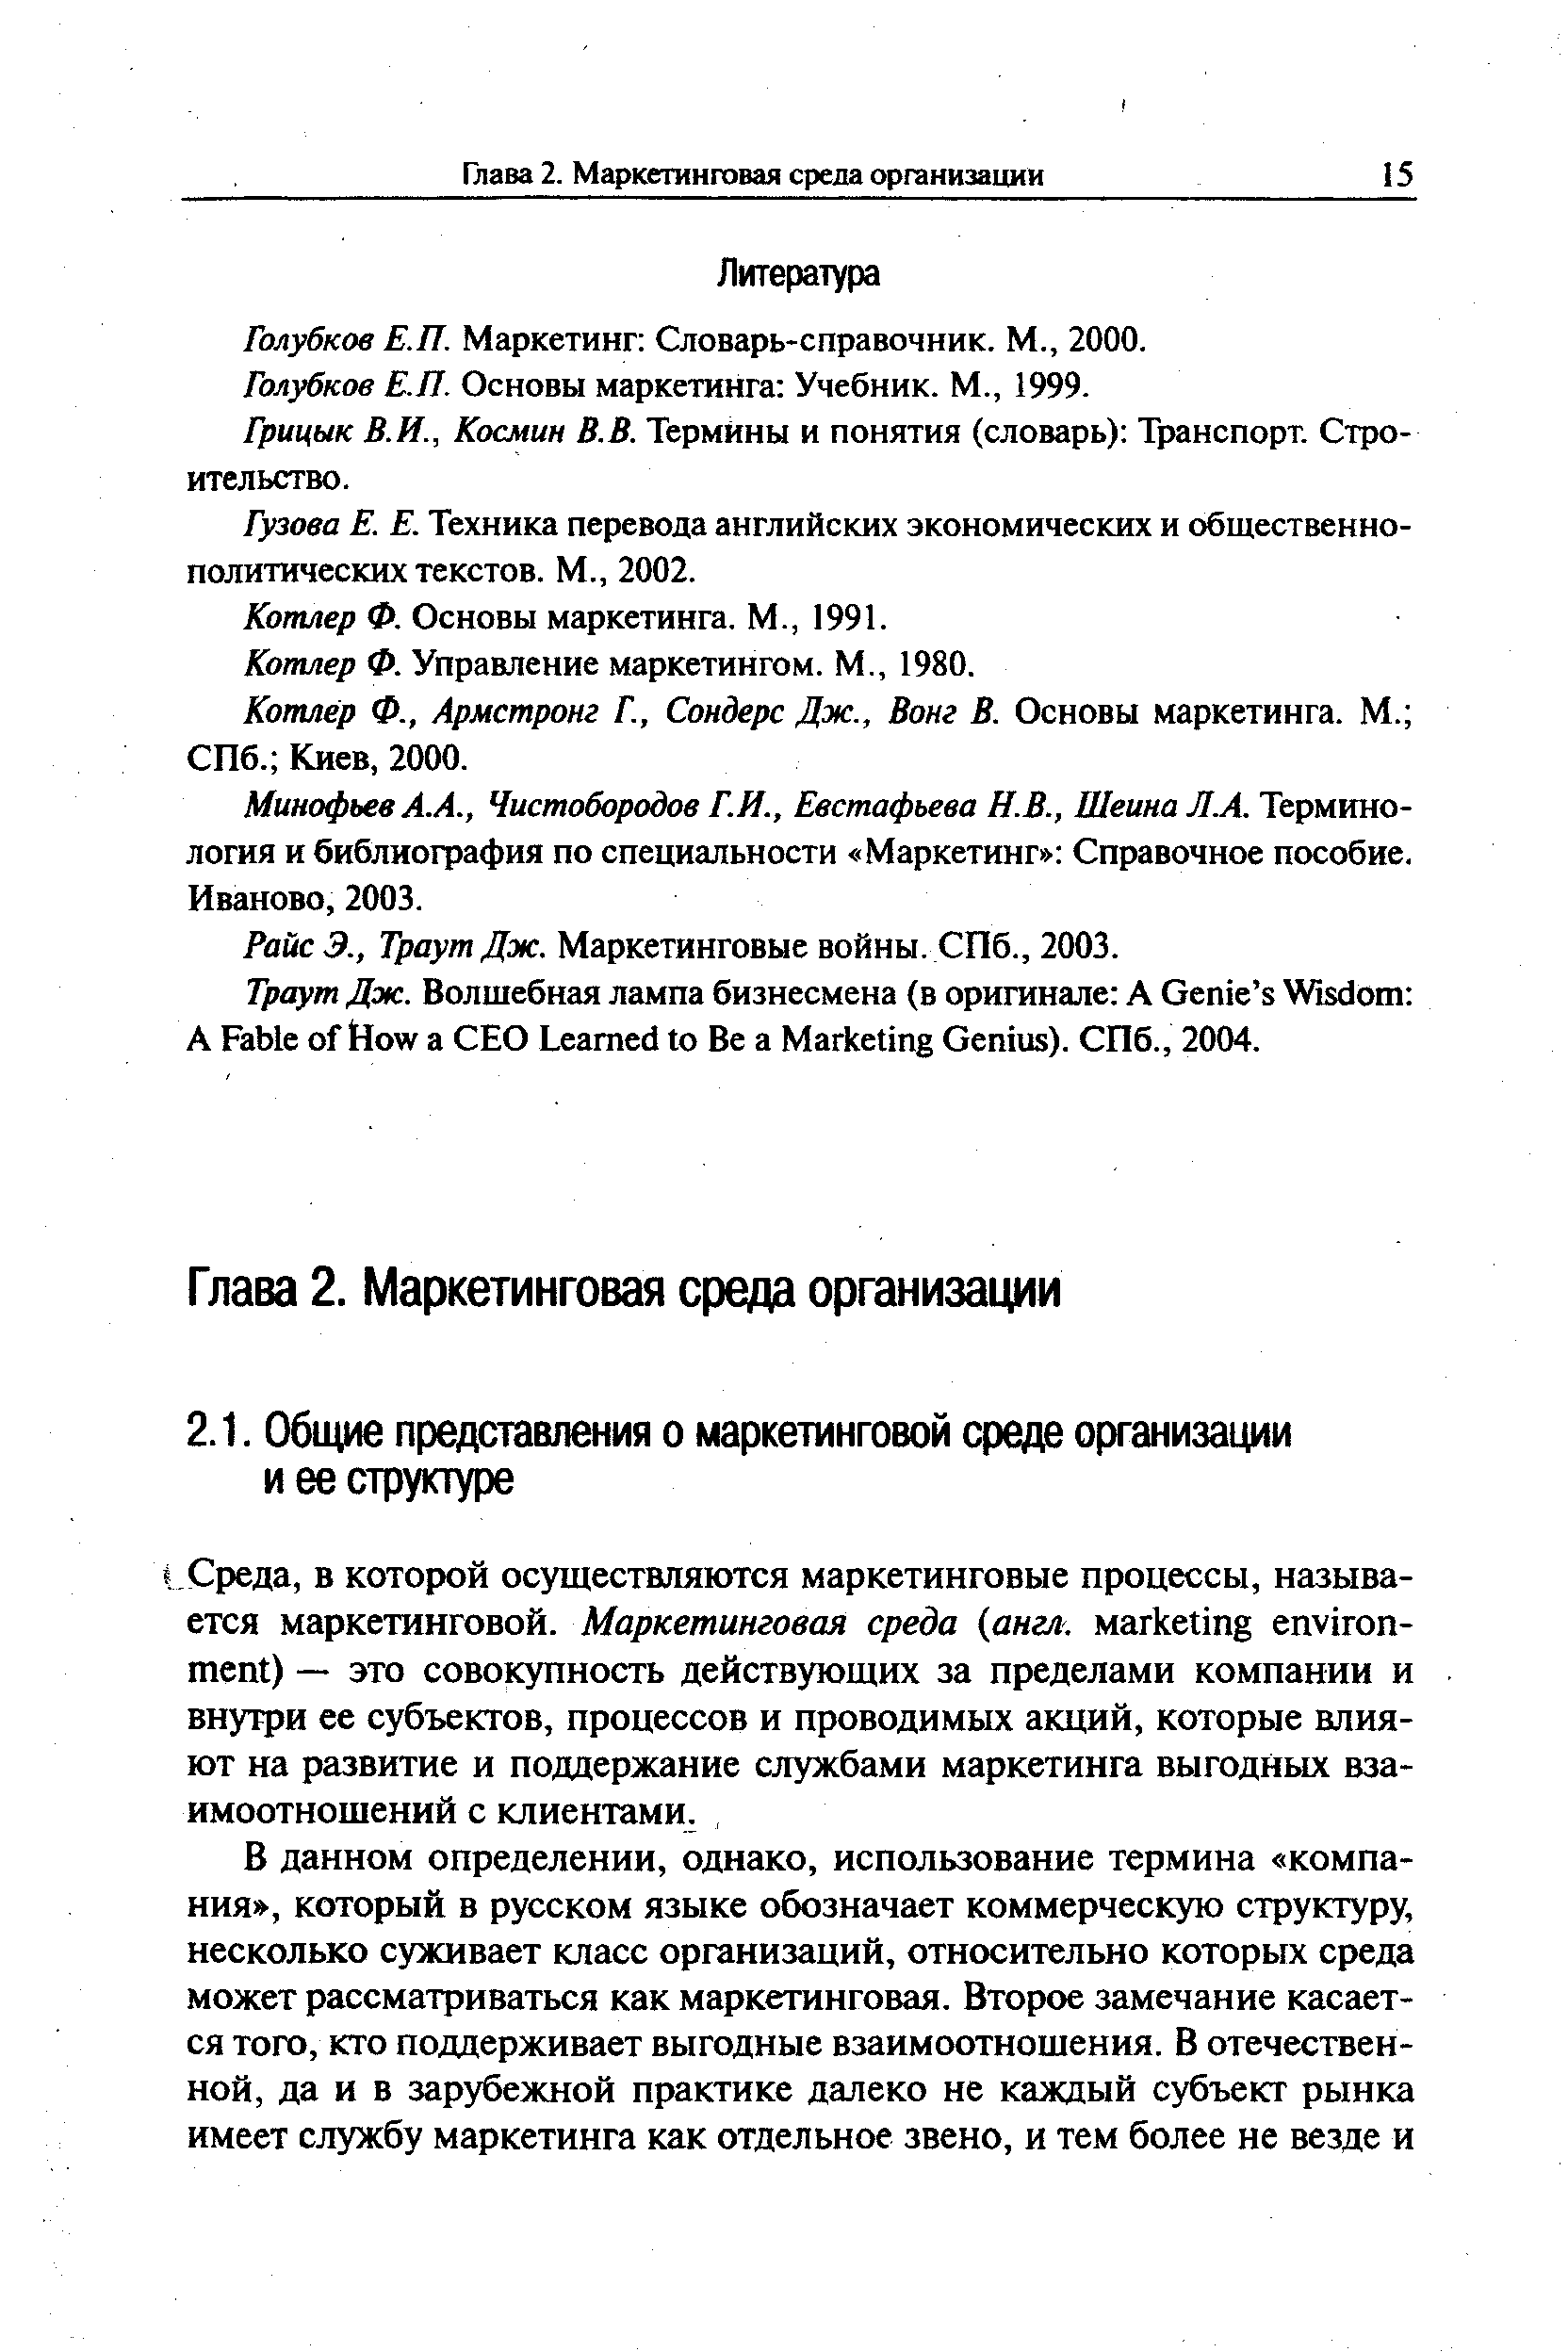 Голубков Е.П. Маркетинг Словарь-справочник. М., 2000.
